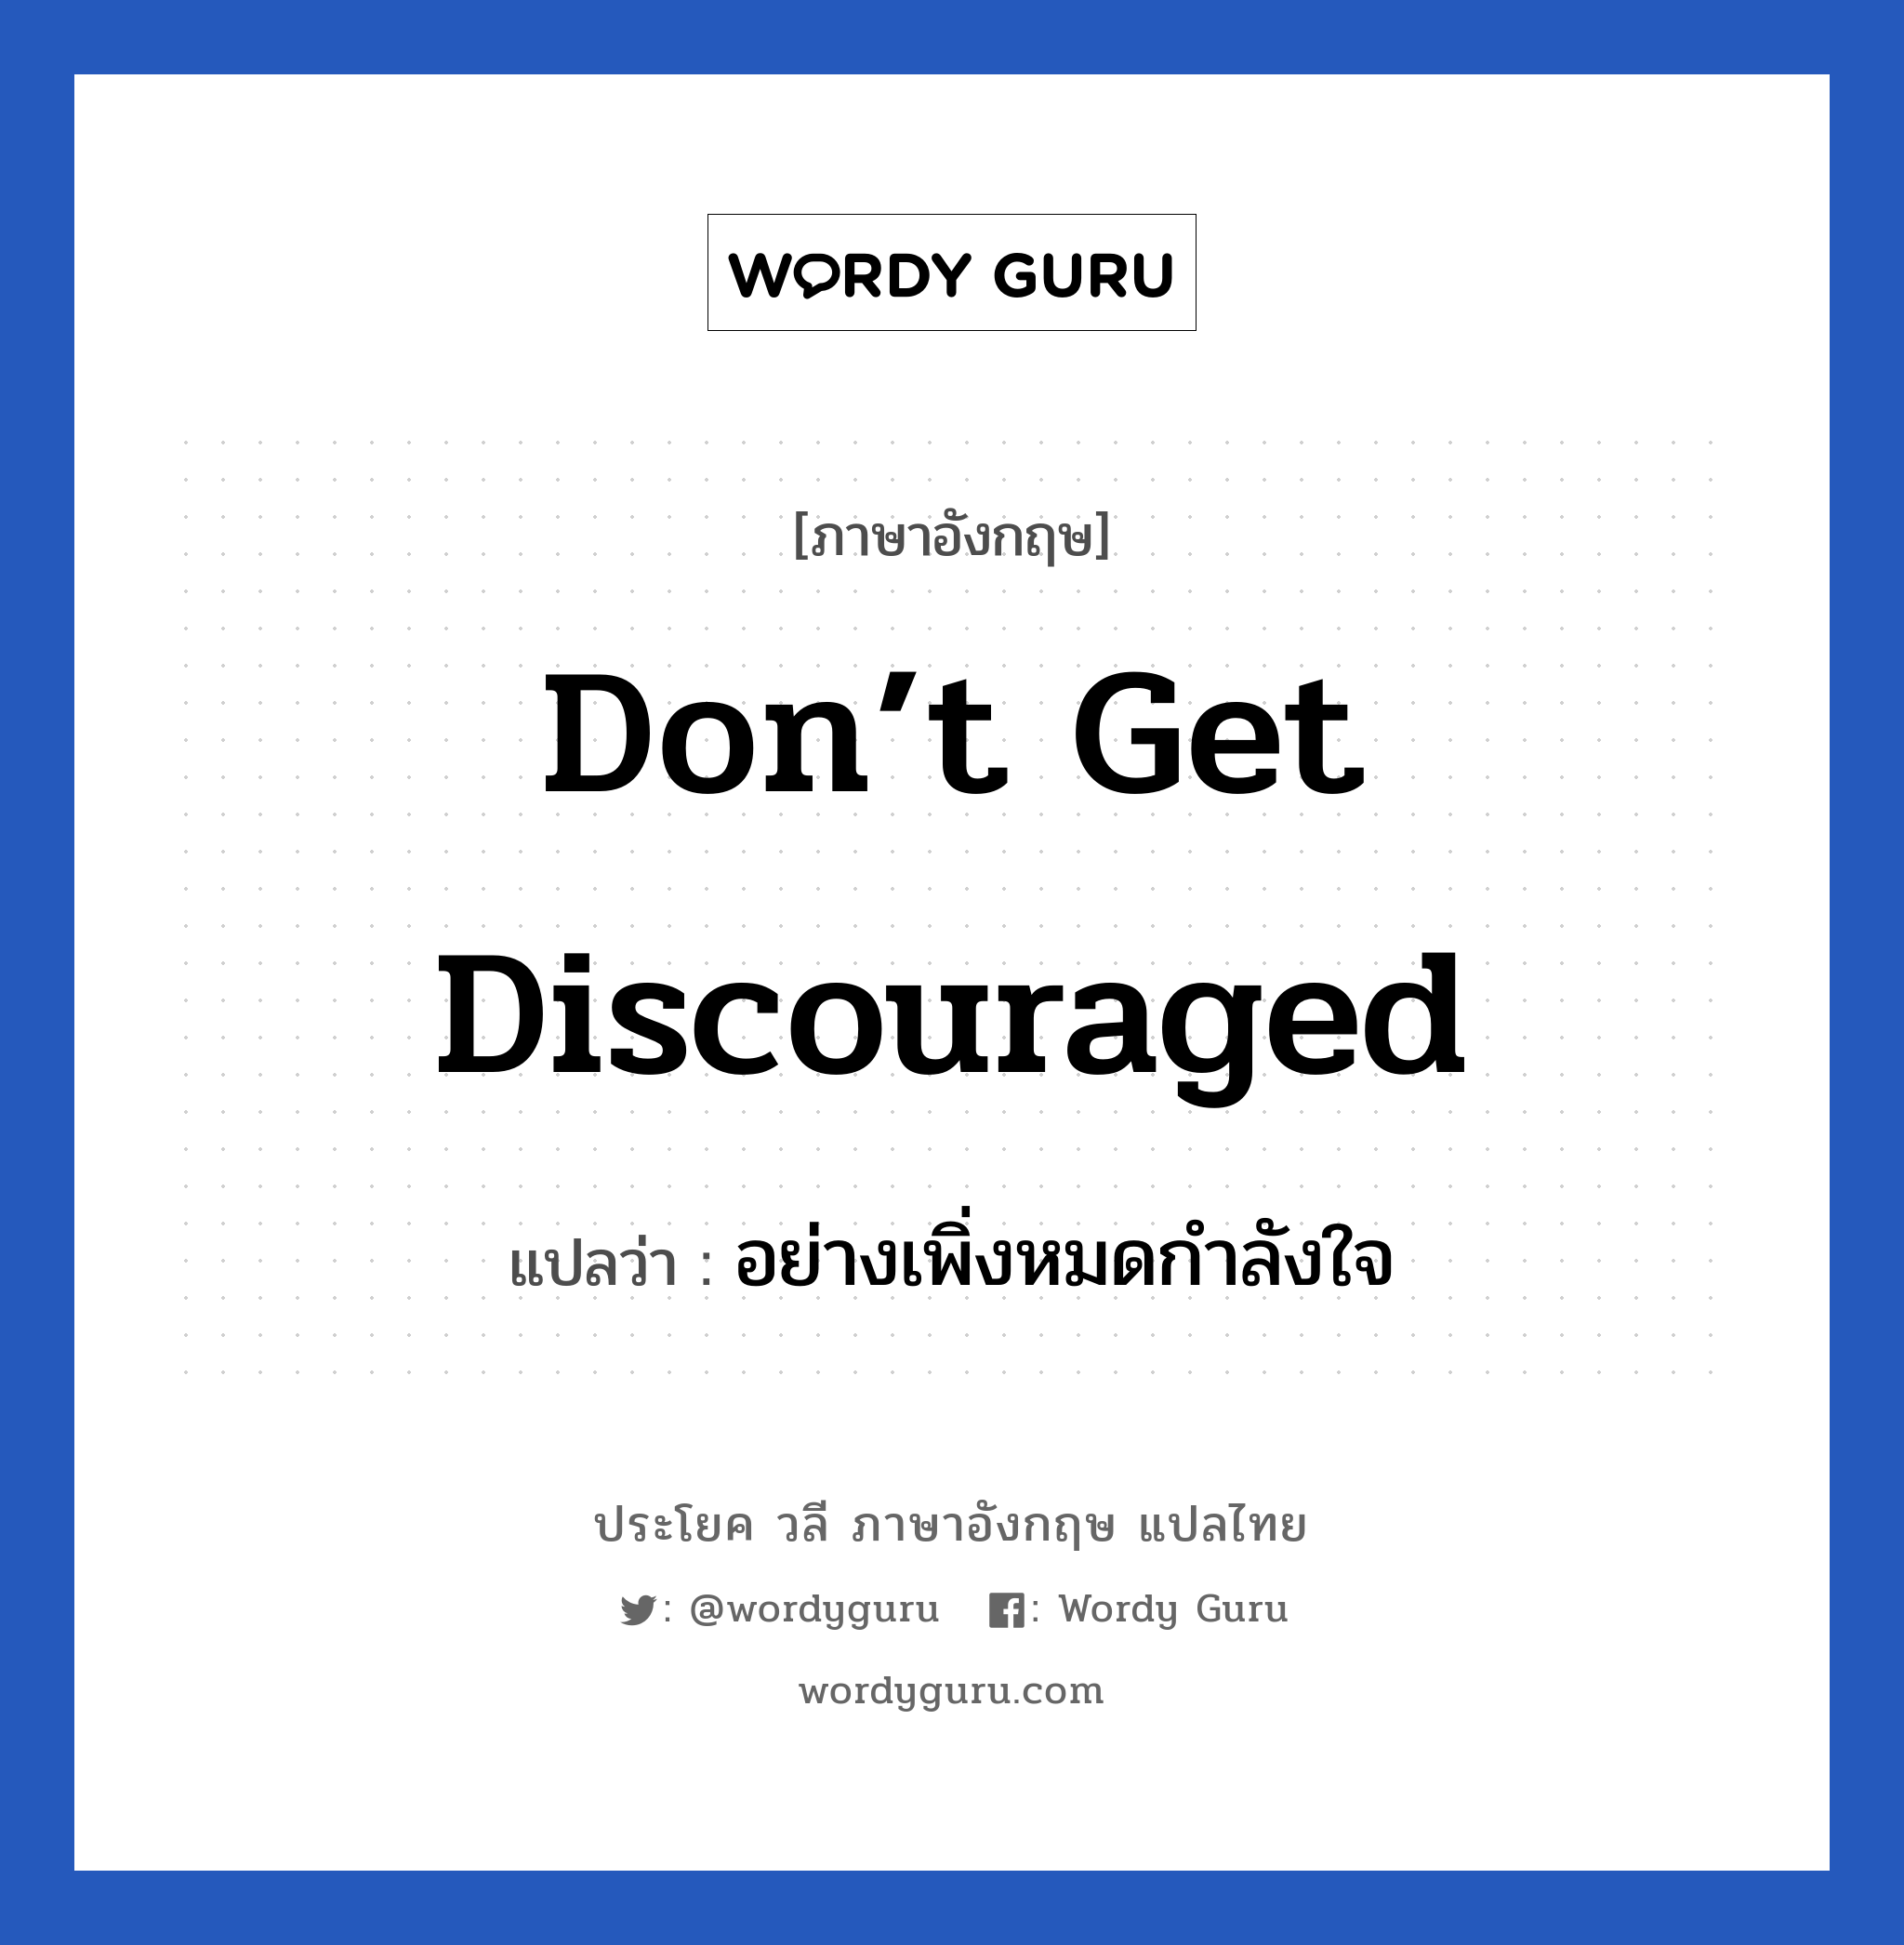 don’t get discouraged แปลว่า? เป็นประโยคในกลุ่มประเภท ให้กำลังใจ, วลีภาษาอังกฤษ don’t get discouraged แปลว่า อย่างเพิ่งหมดกำลังใจ หมวด ให้กำลังใจ